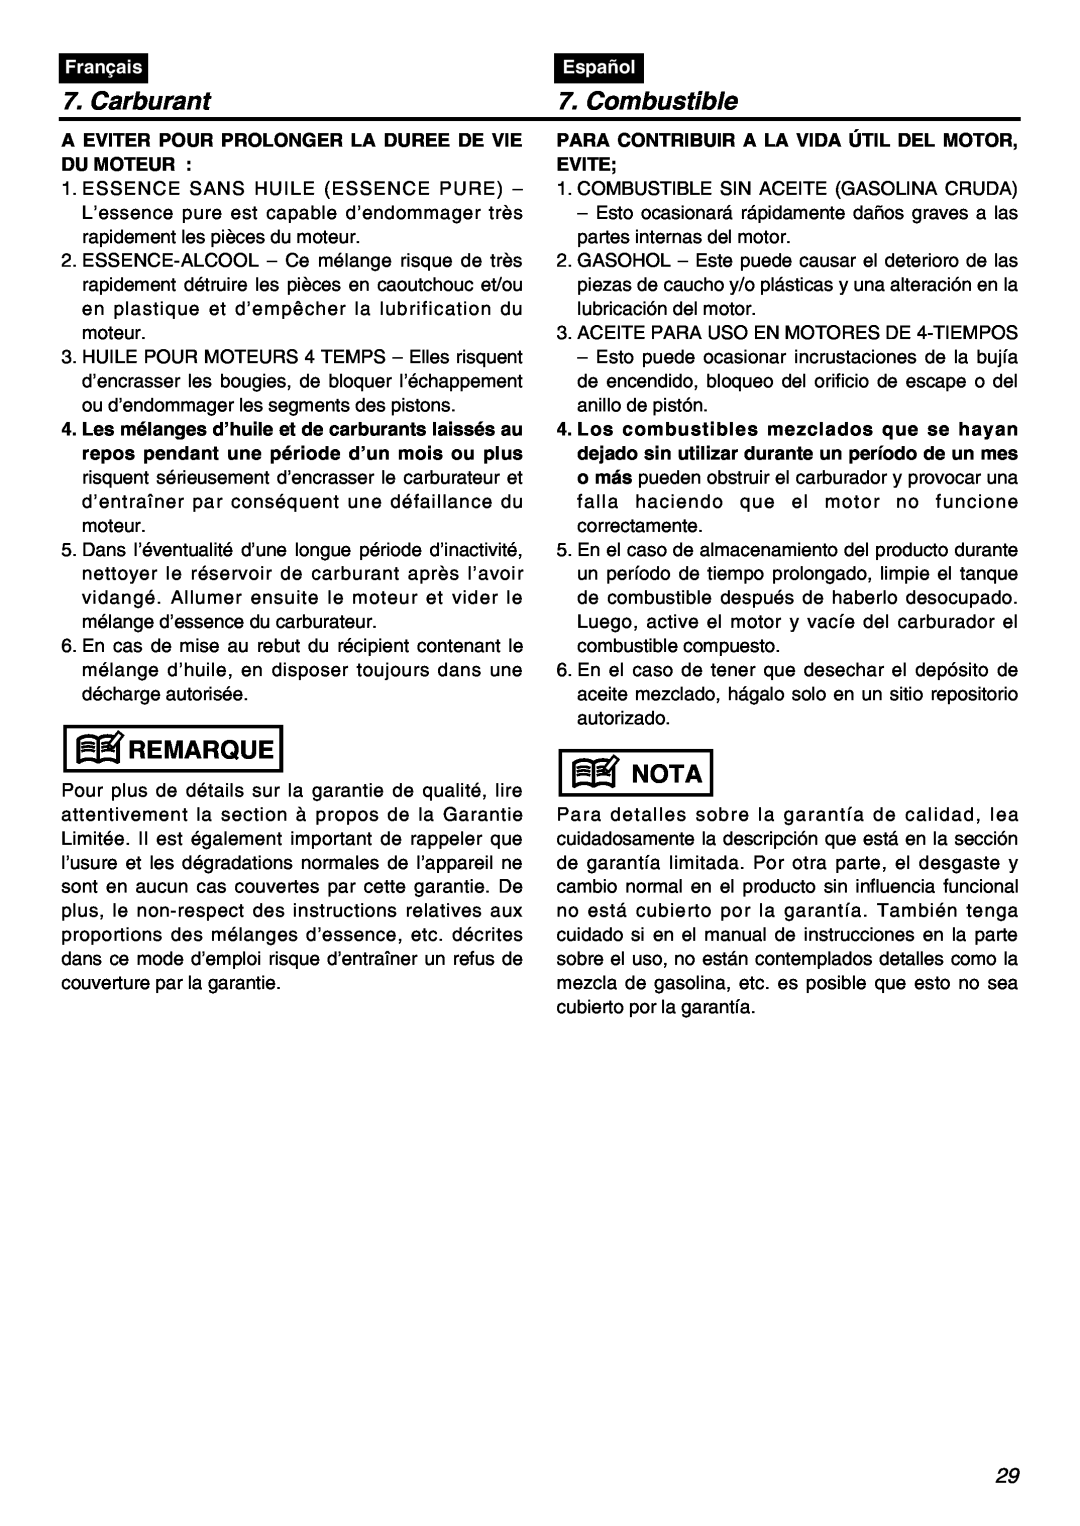 RedMax EBZ7100RH-CA, EBZ7100-CA manual Carburant, Combustible, Remarque, Nota, Français, Español 